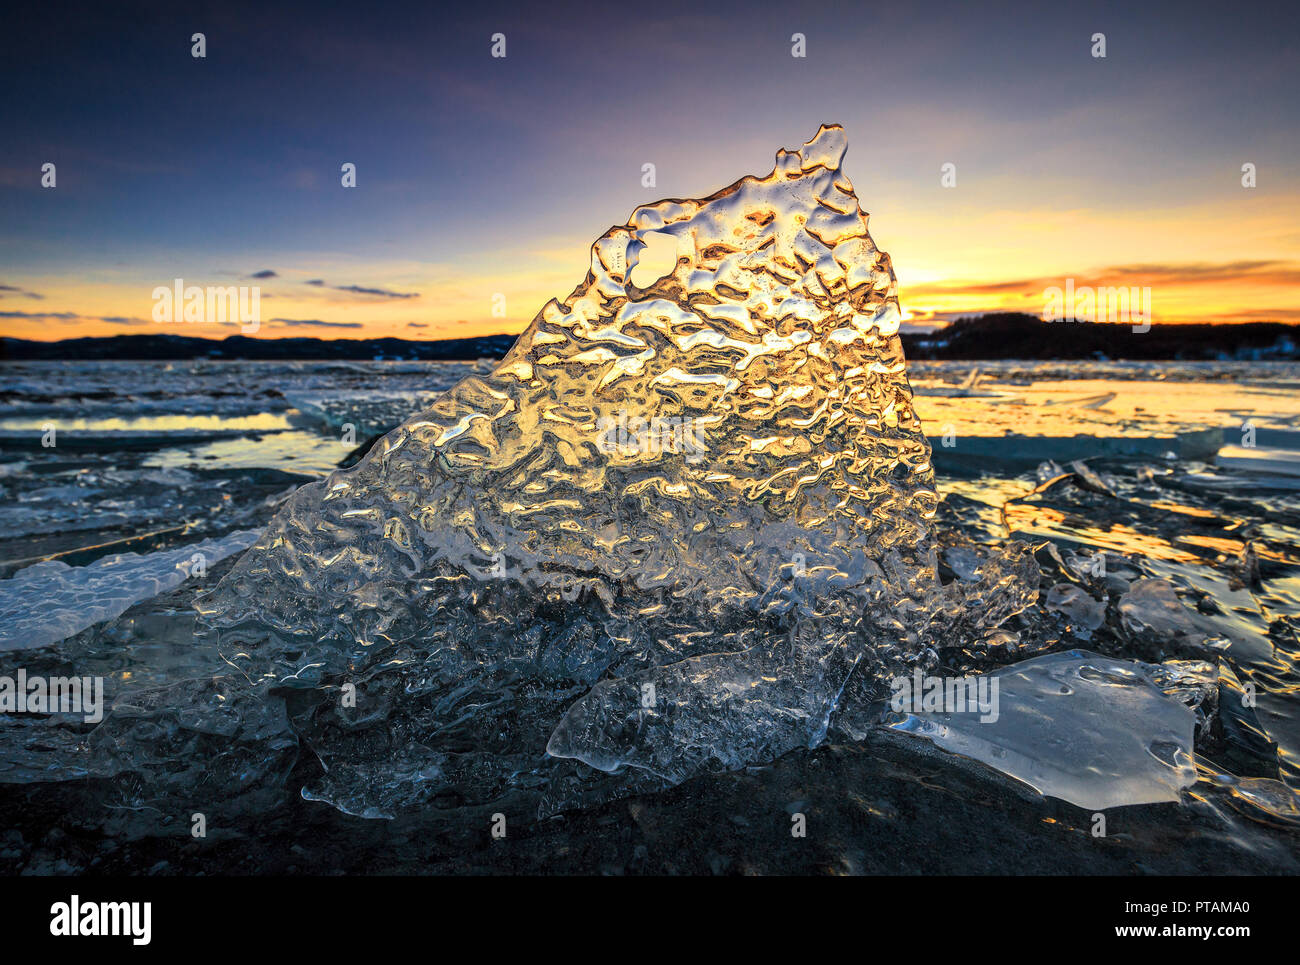 Banc de glace sur lac gelé Jonsvatnet, beau coucher du soleil. La Norvège, la région de Trondheim. Banque D'Images